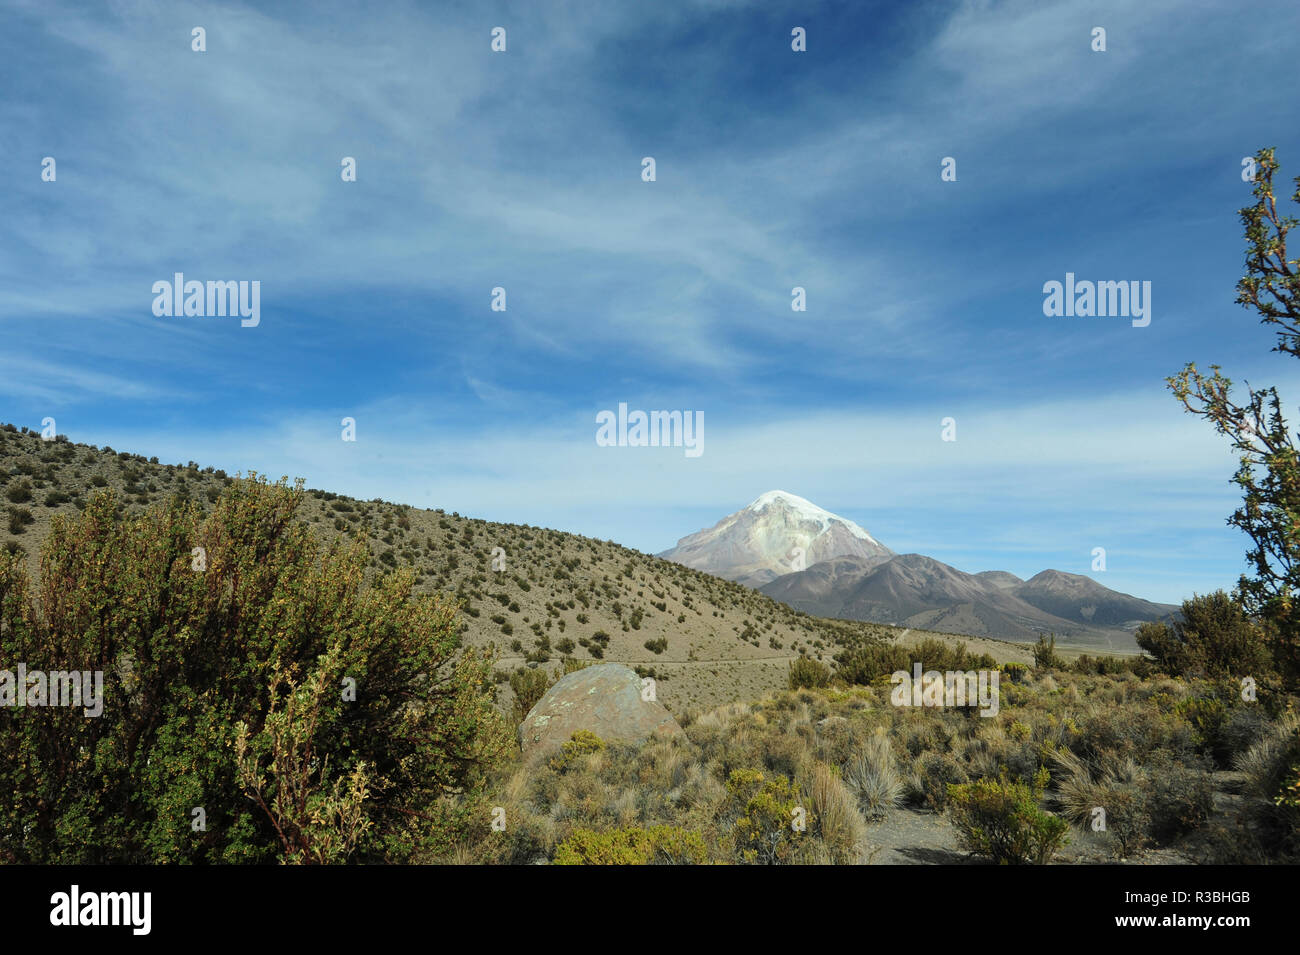 Altiplano aride paysage, le parc national de Sajama, Bolivie Banque D'Images